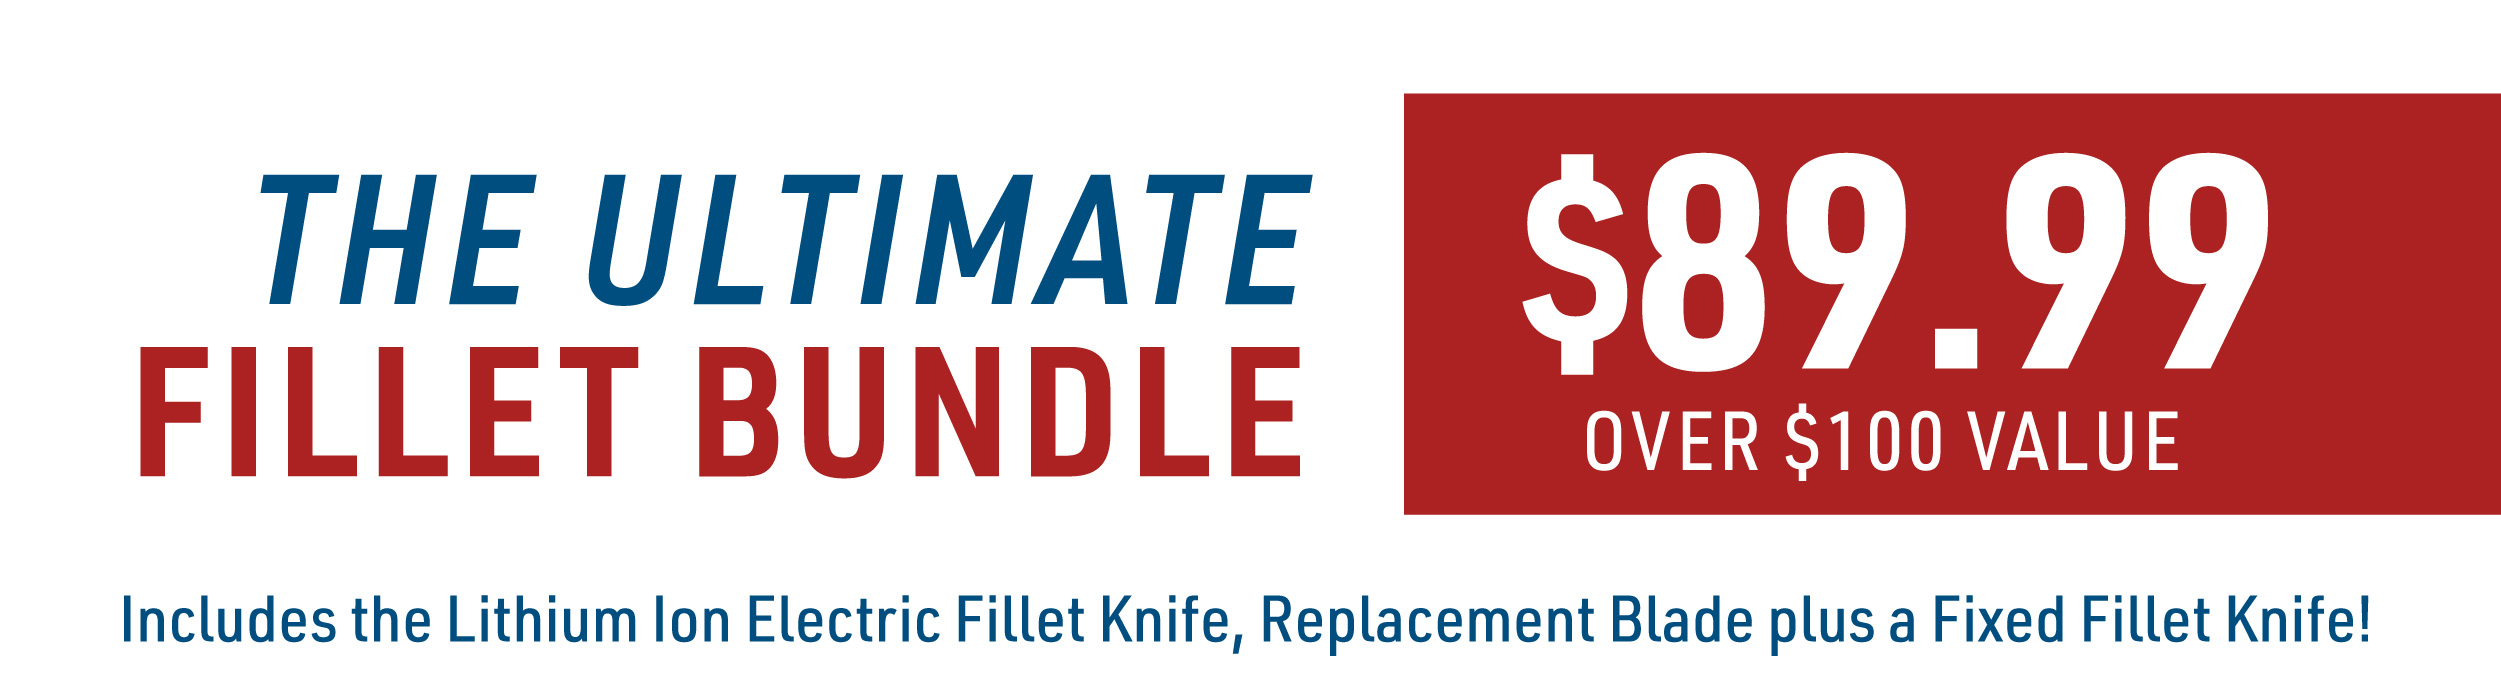 Get The Ultimate Fillet Bundle $100 Value For $89.99